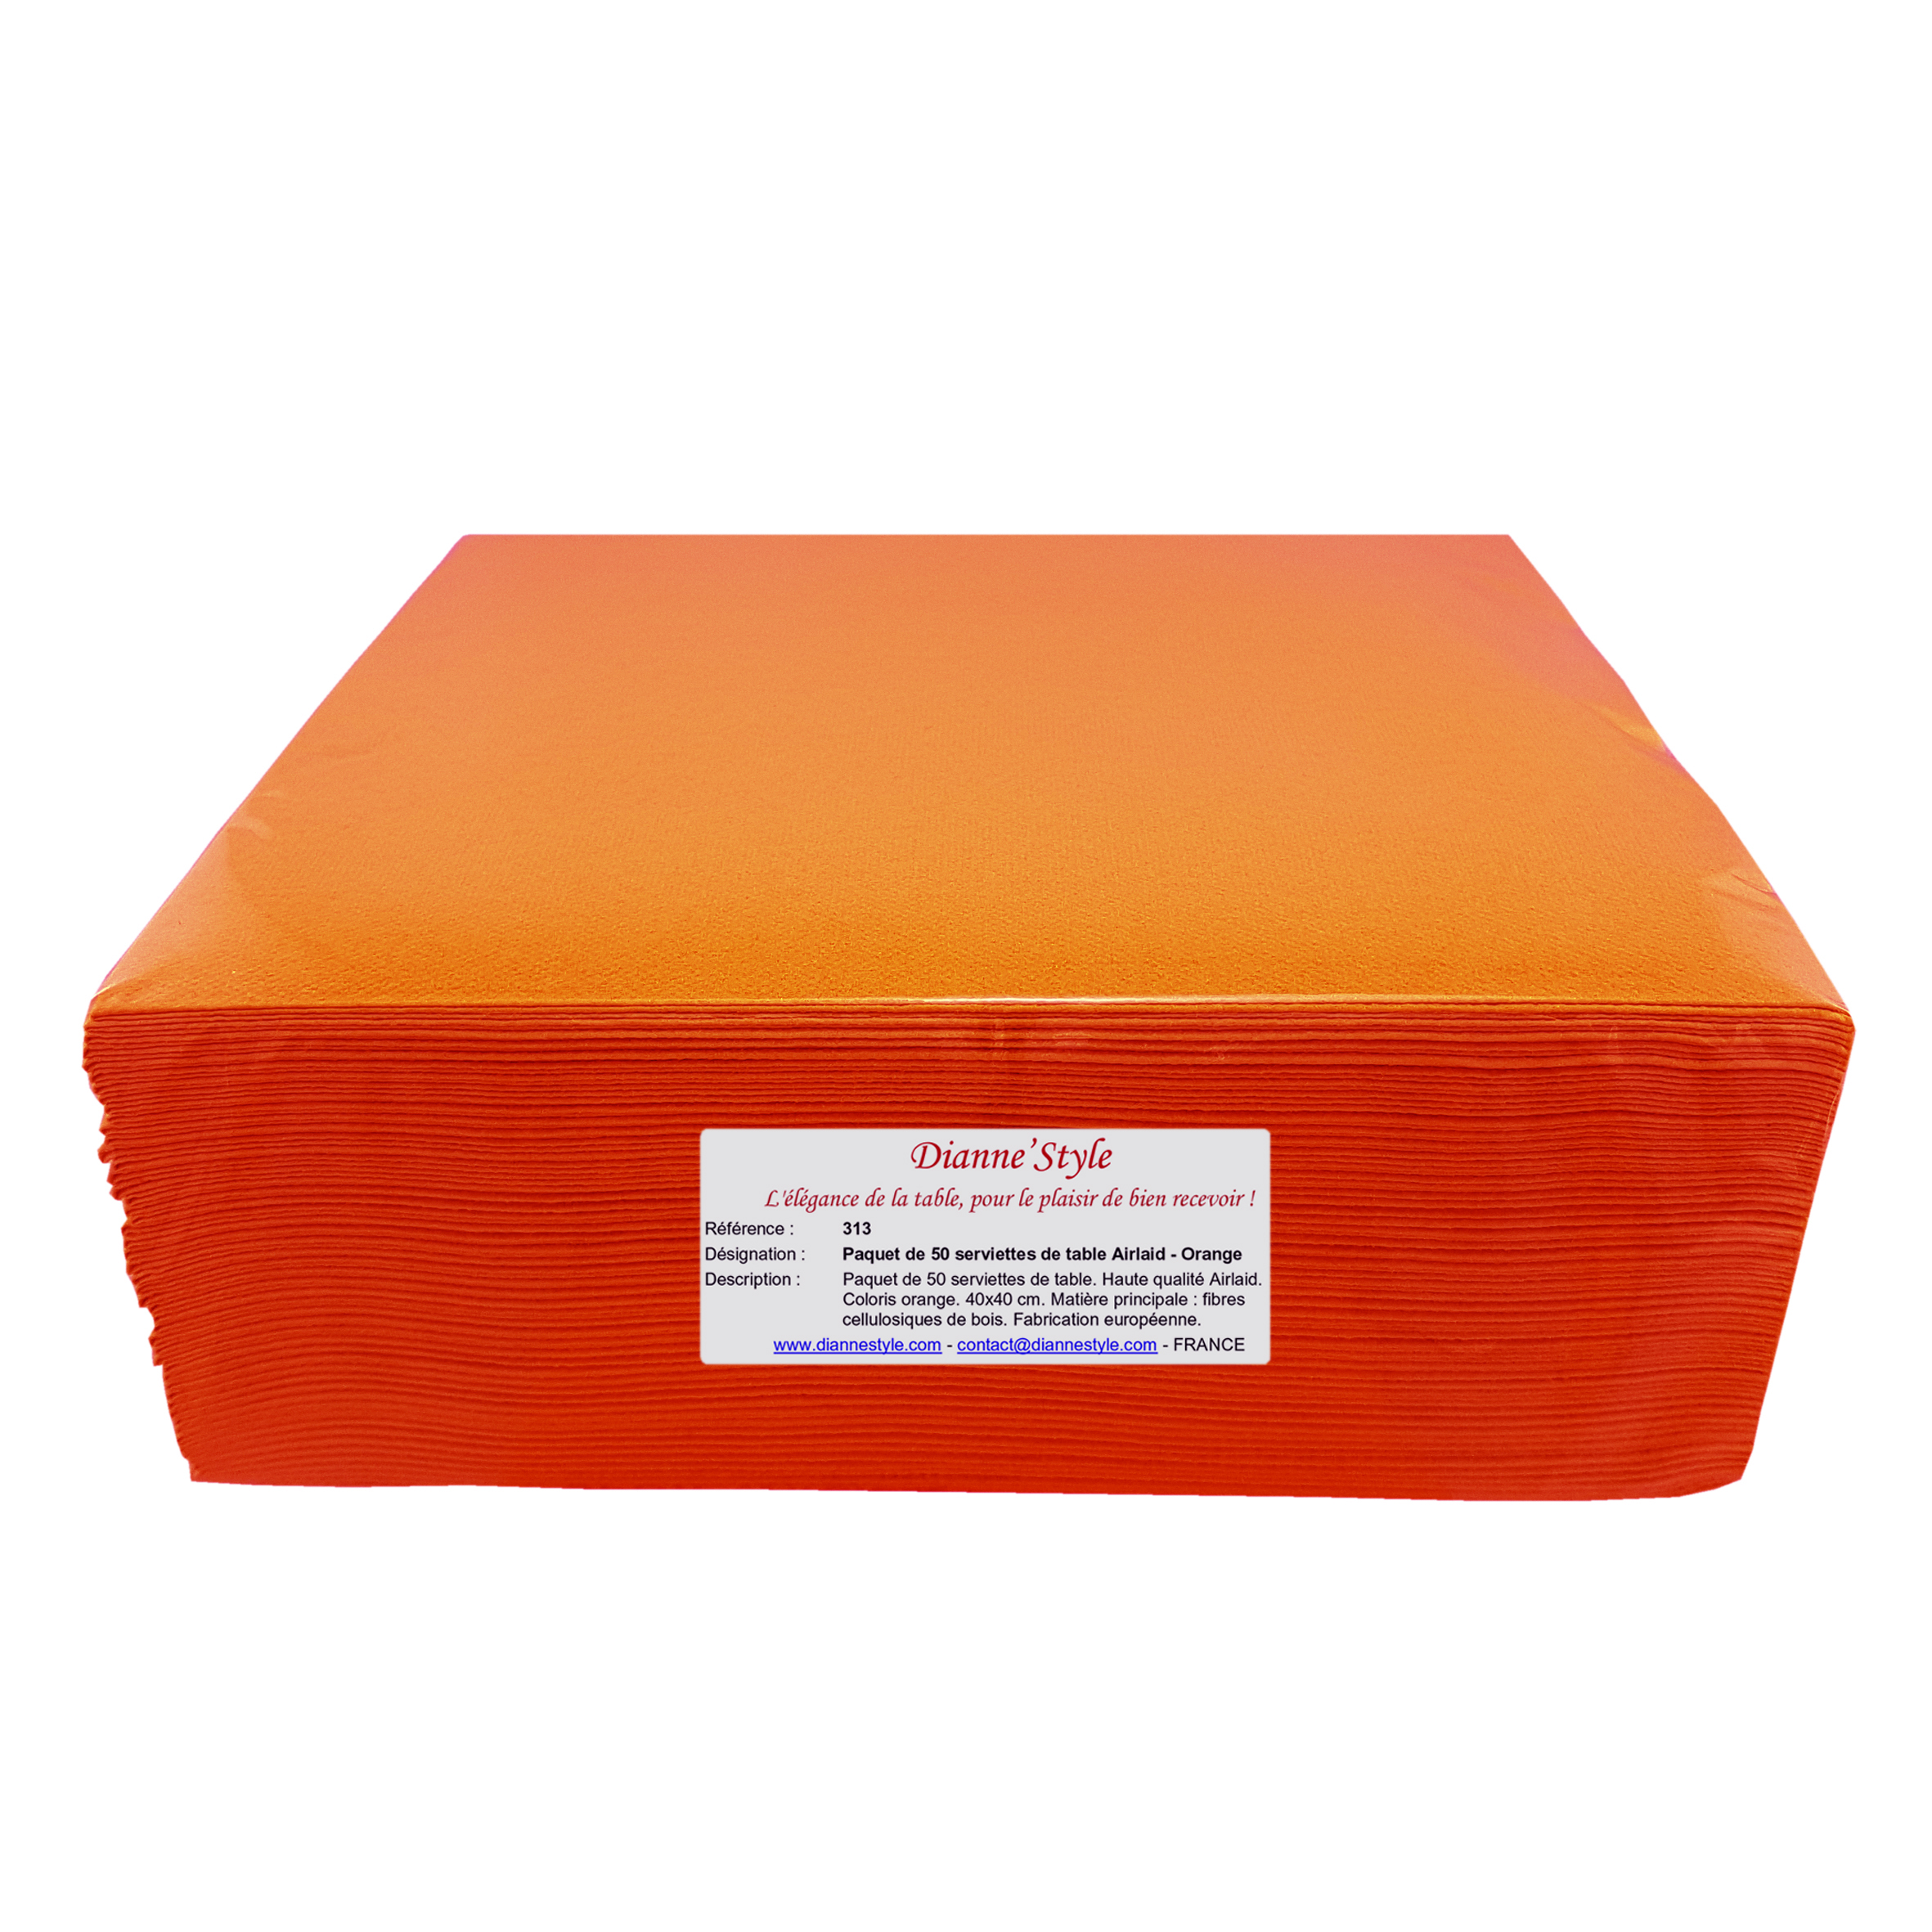 Paquet de 50 serviettes de table Airlaid - Orange. Réf 313